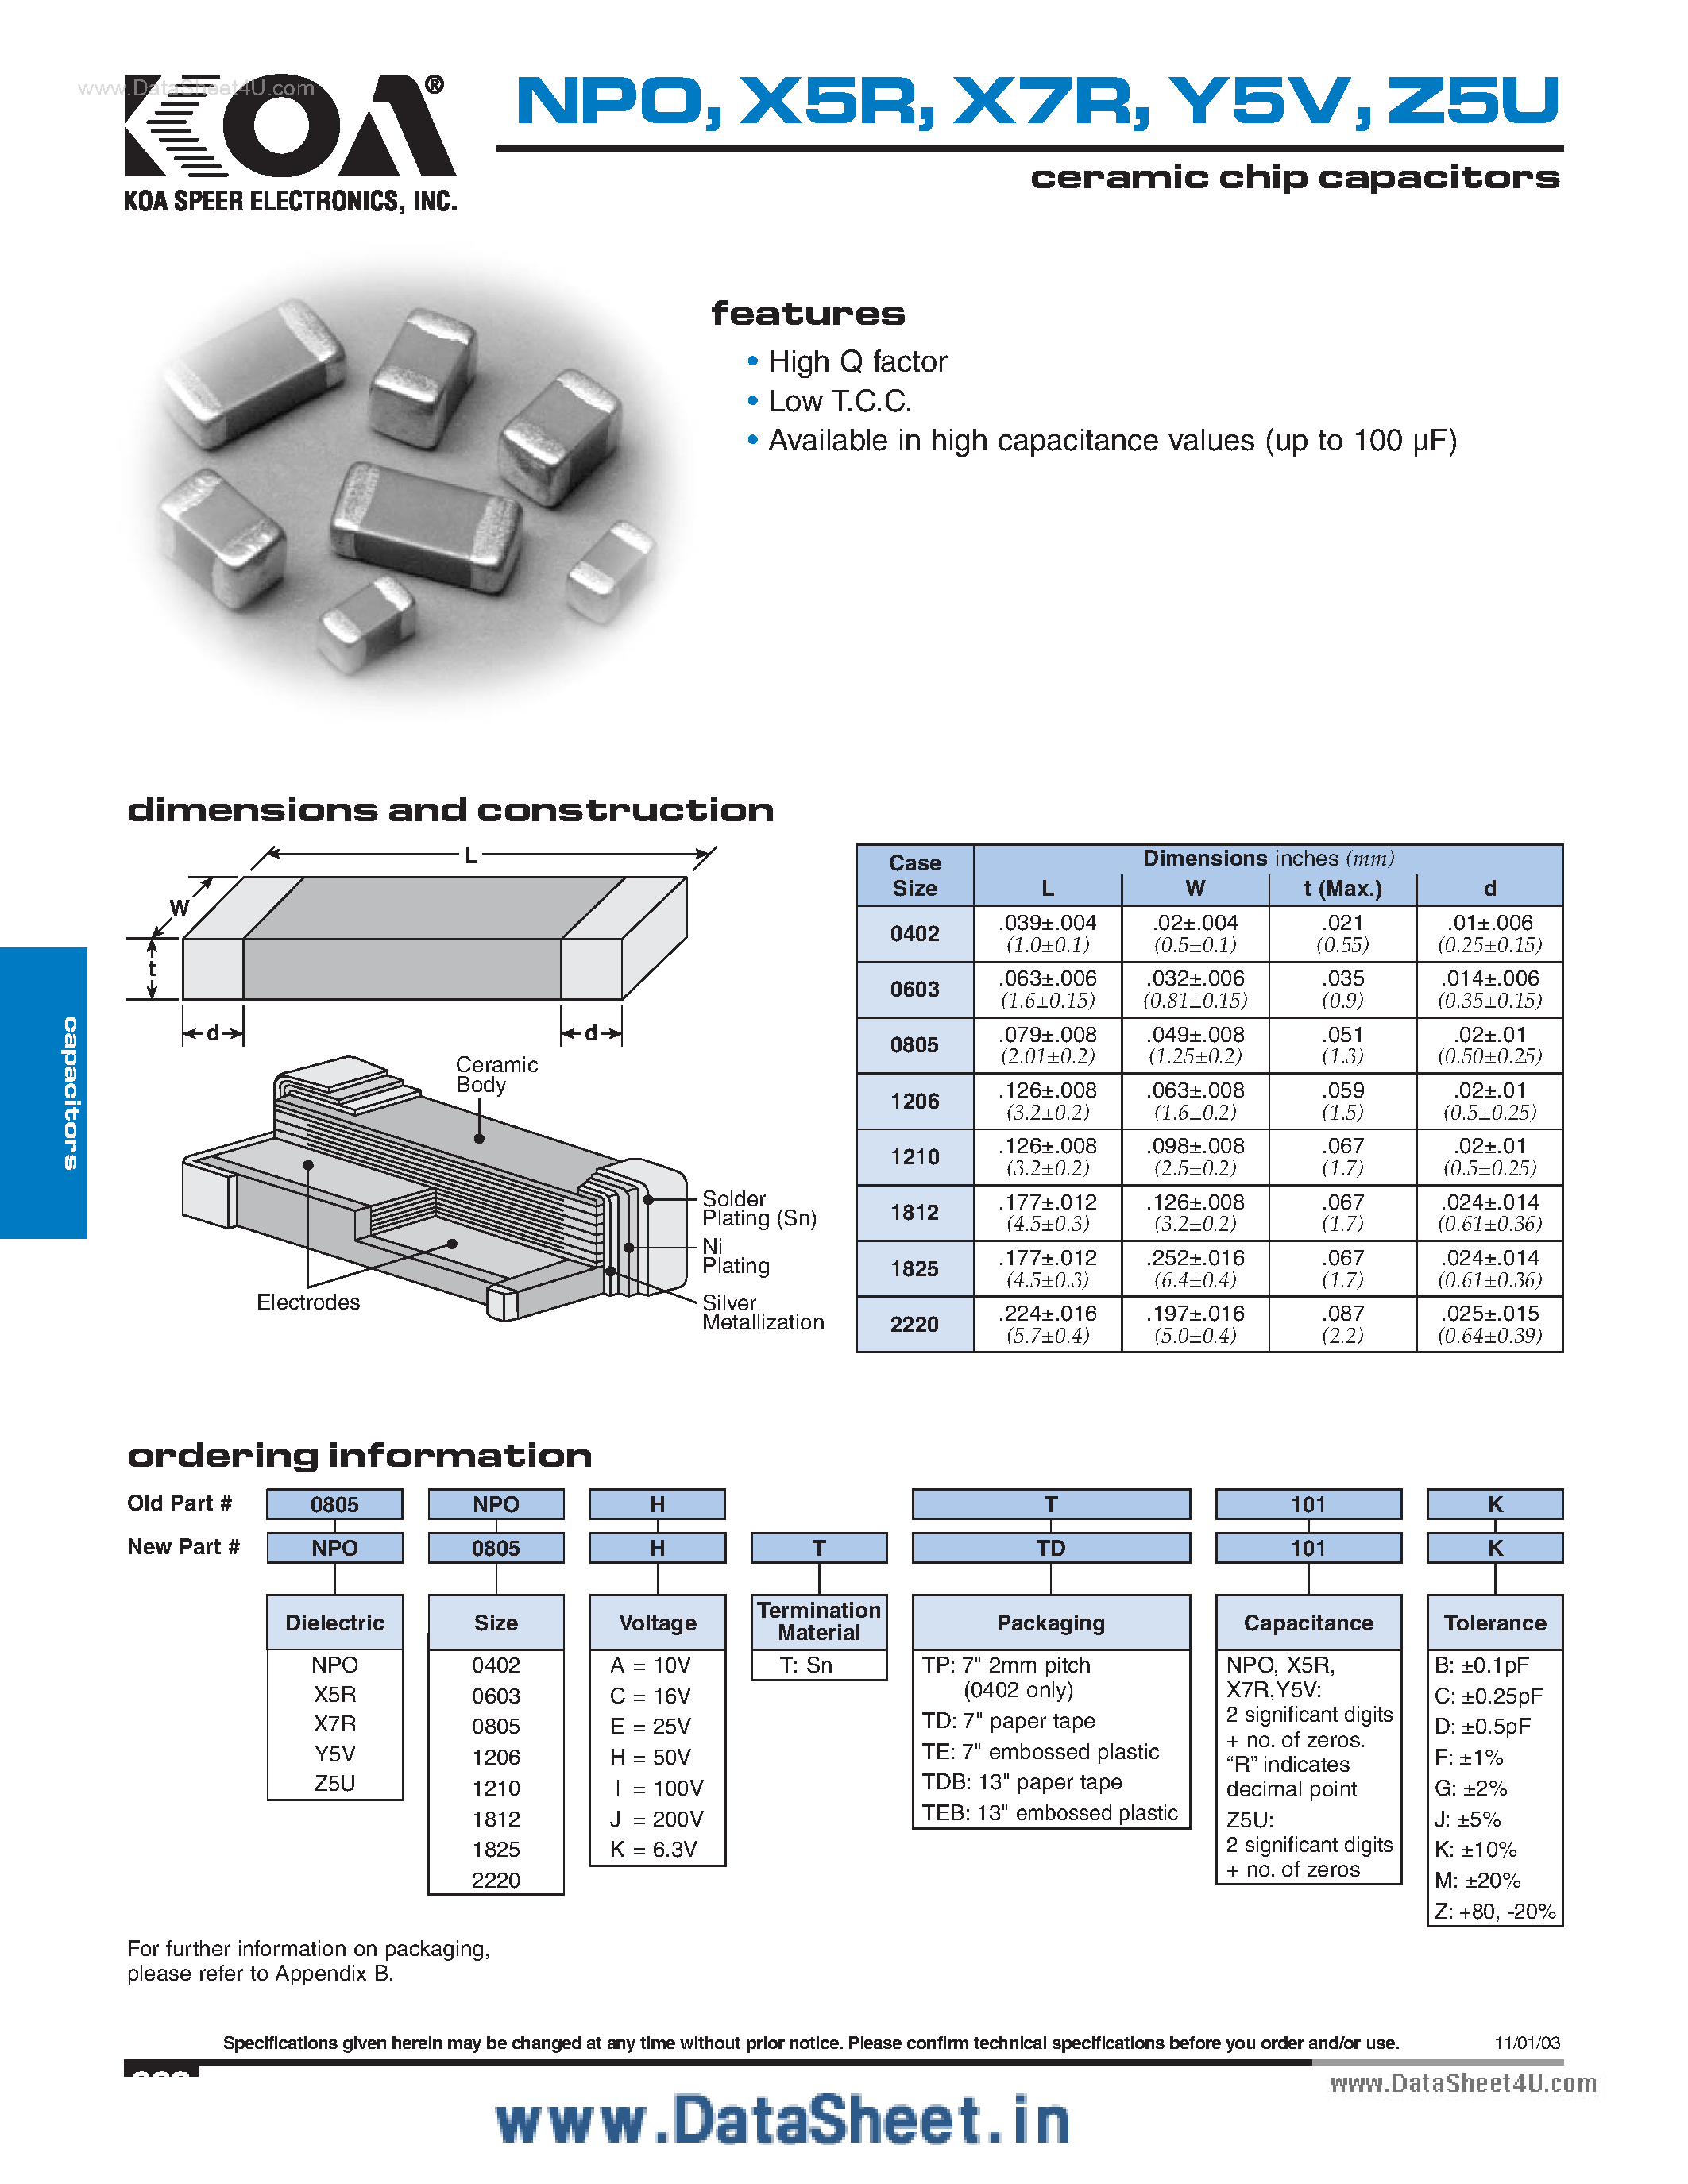 Даташит Z5U - ceramic chip capacitors страница 1